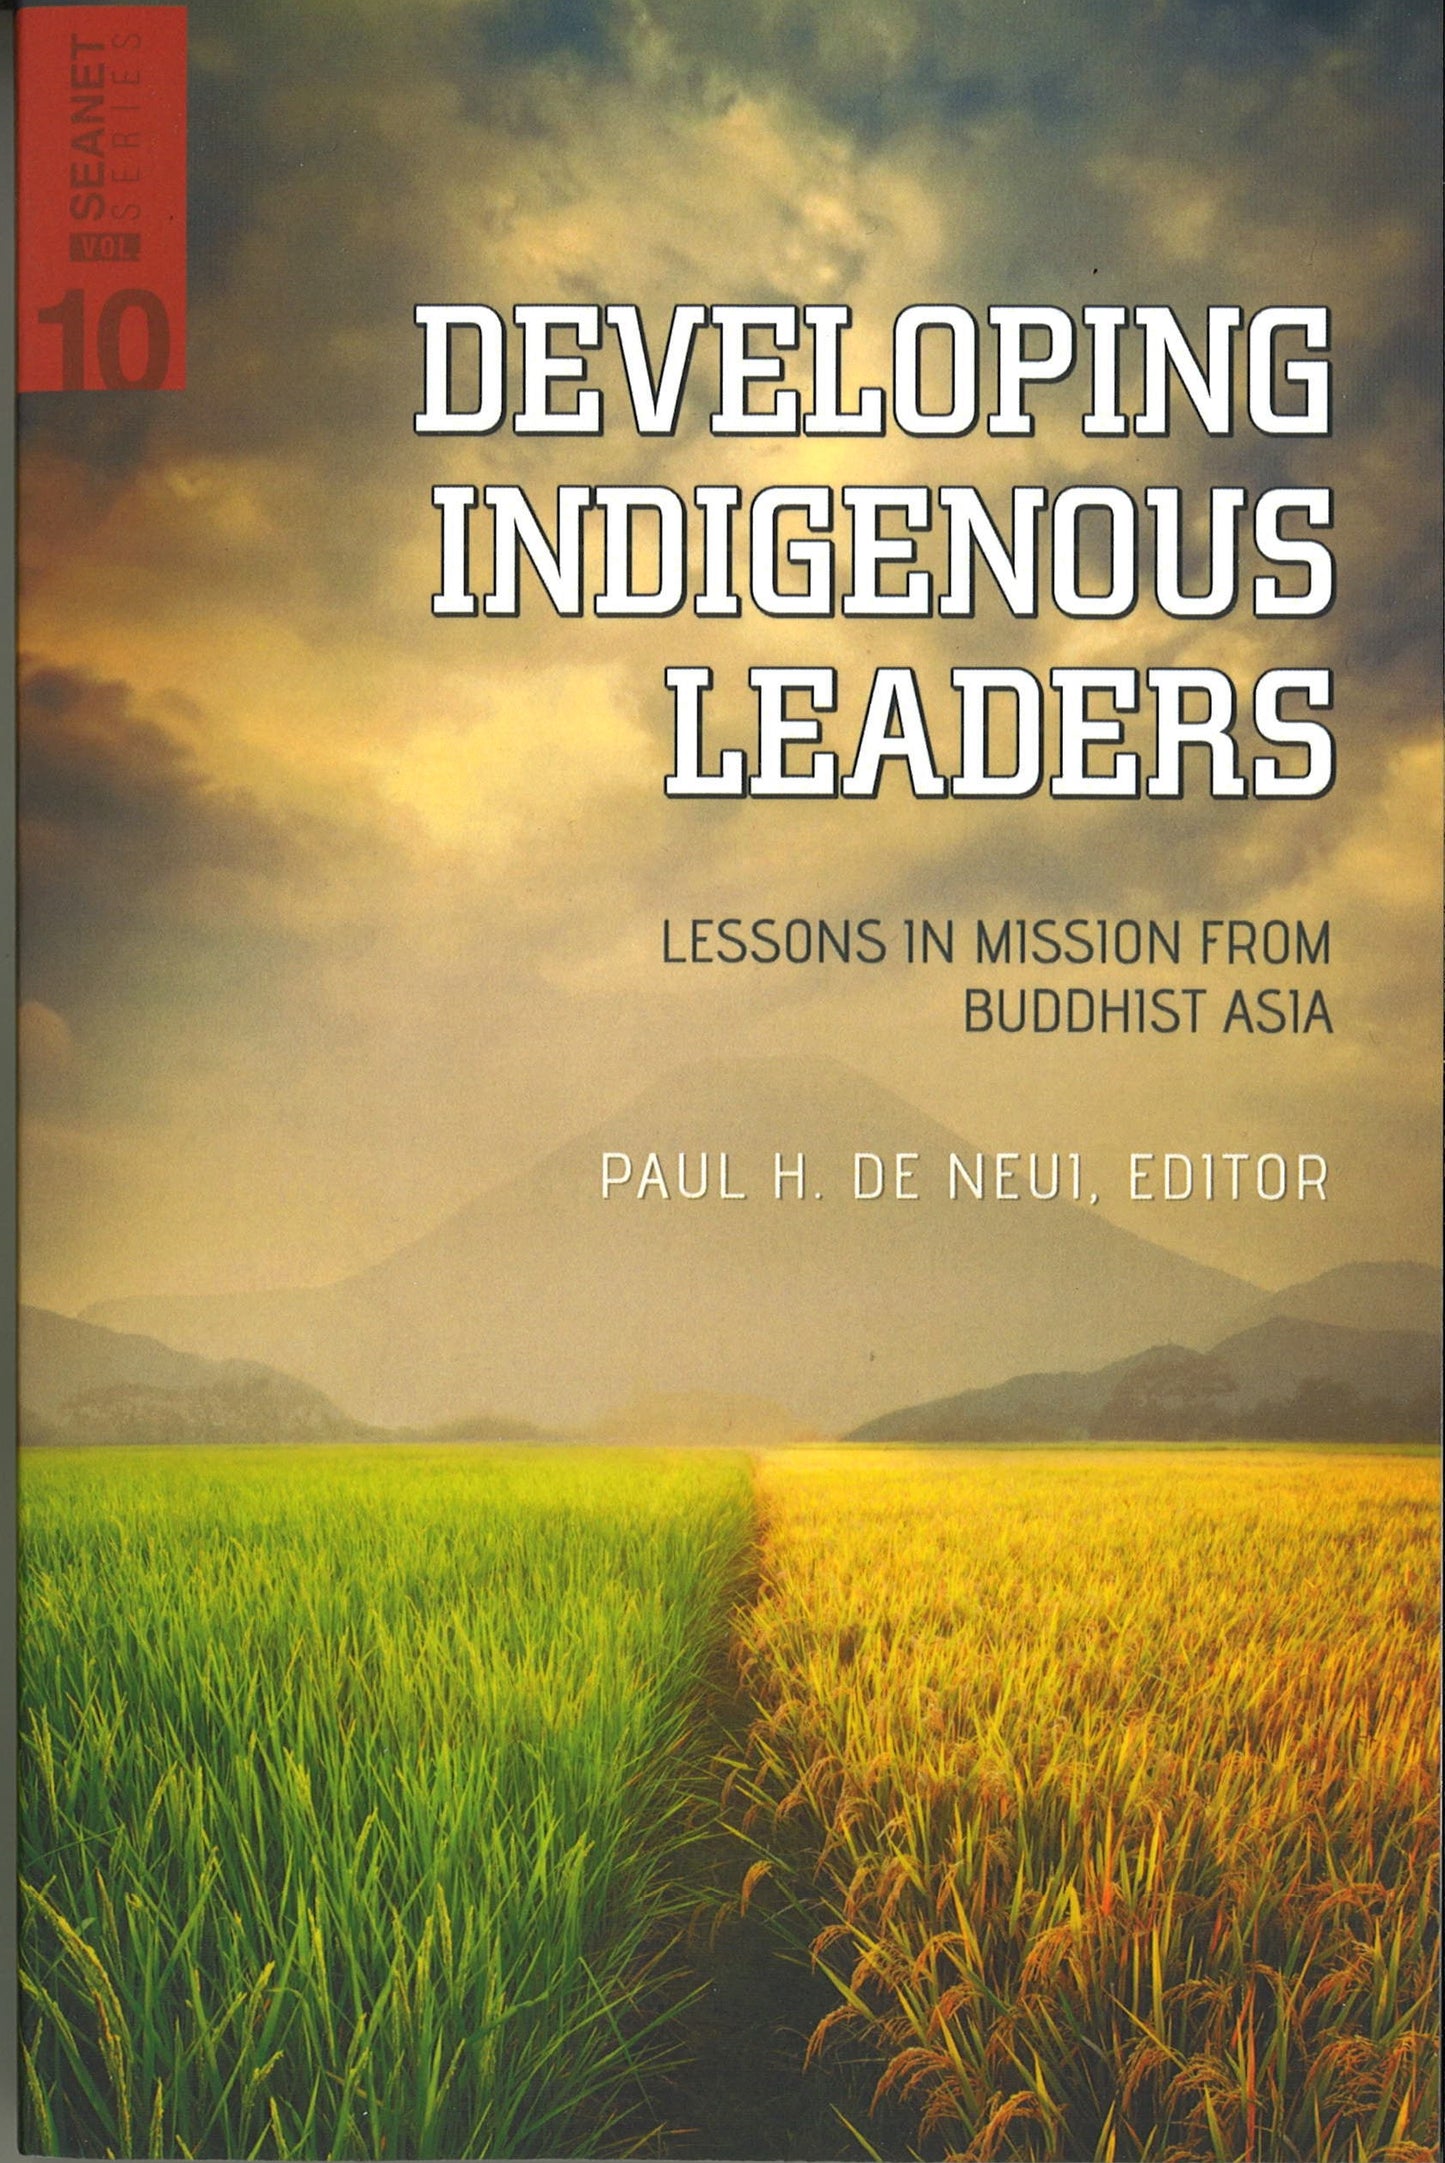 Developing Indigenous Leaders